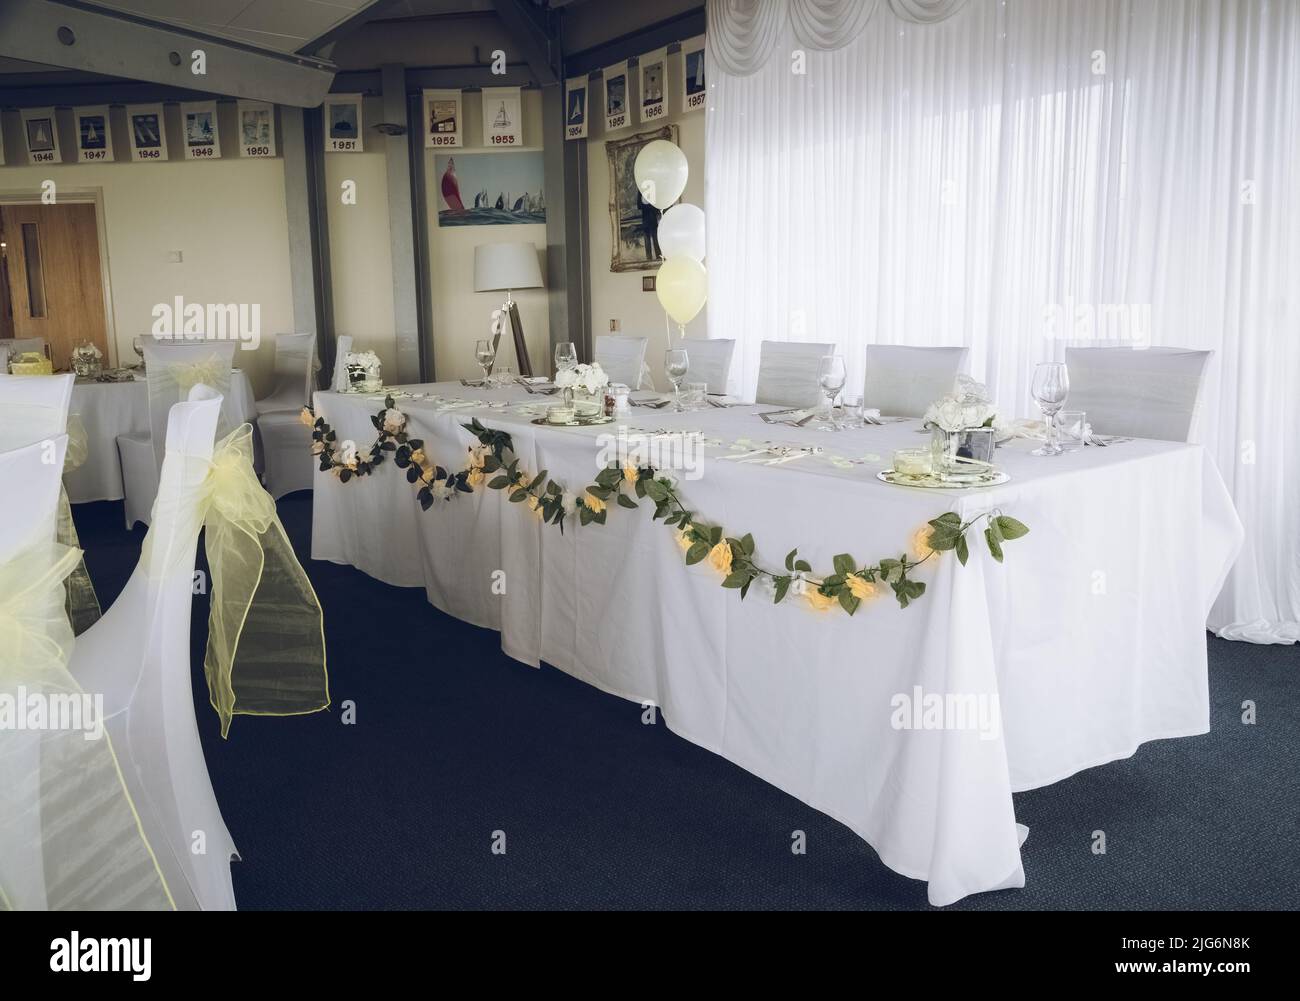 Ein Tisch an einem Hochzeitsempfang, der für ein Hochzeitsfrühstück ausgelegt ist Stockfoto